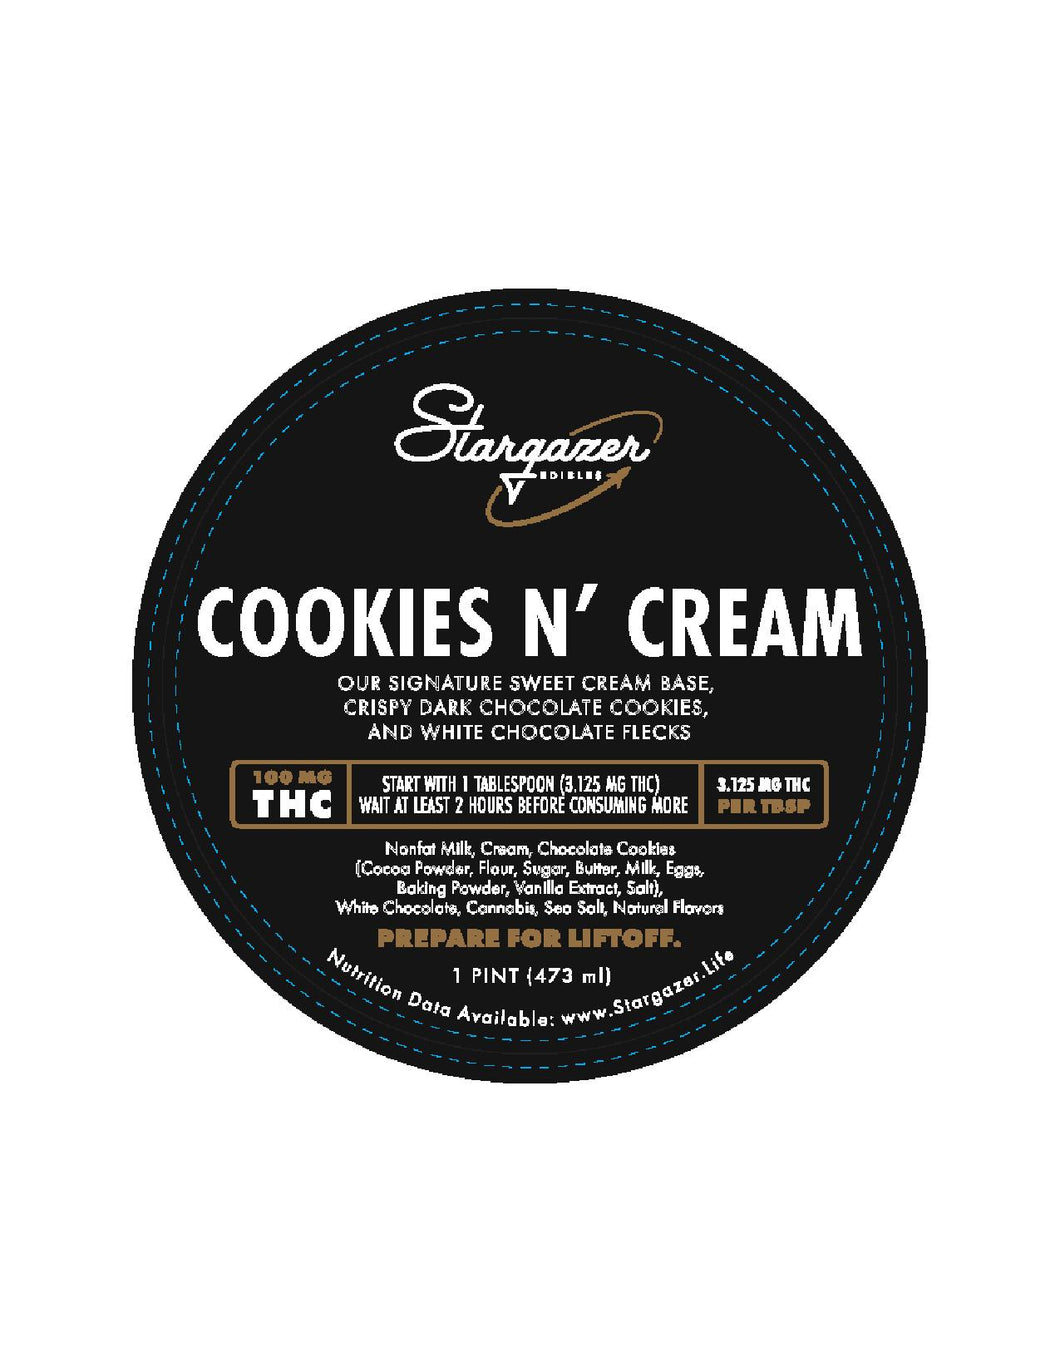 Stargazer Cookies & Cream Ice Cream Pint 100mg